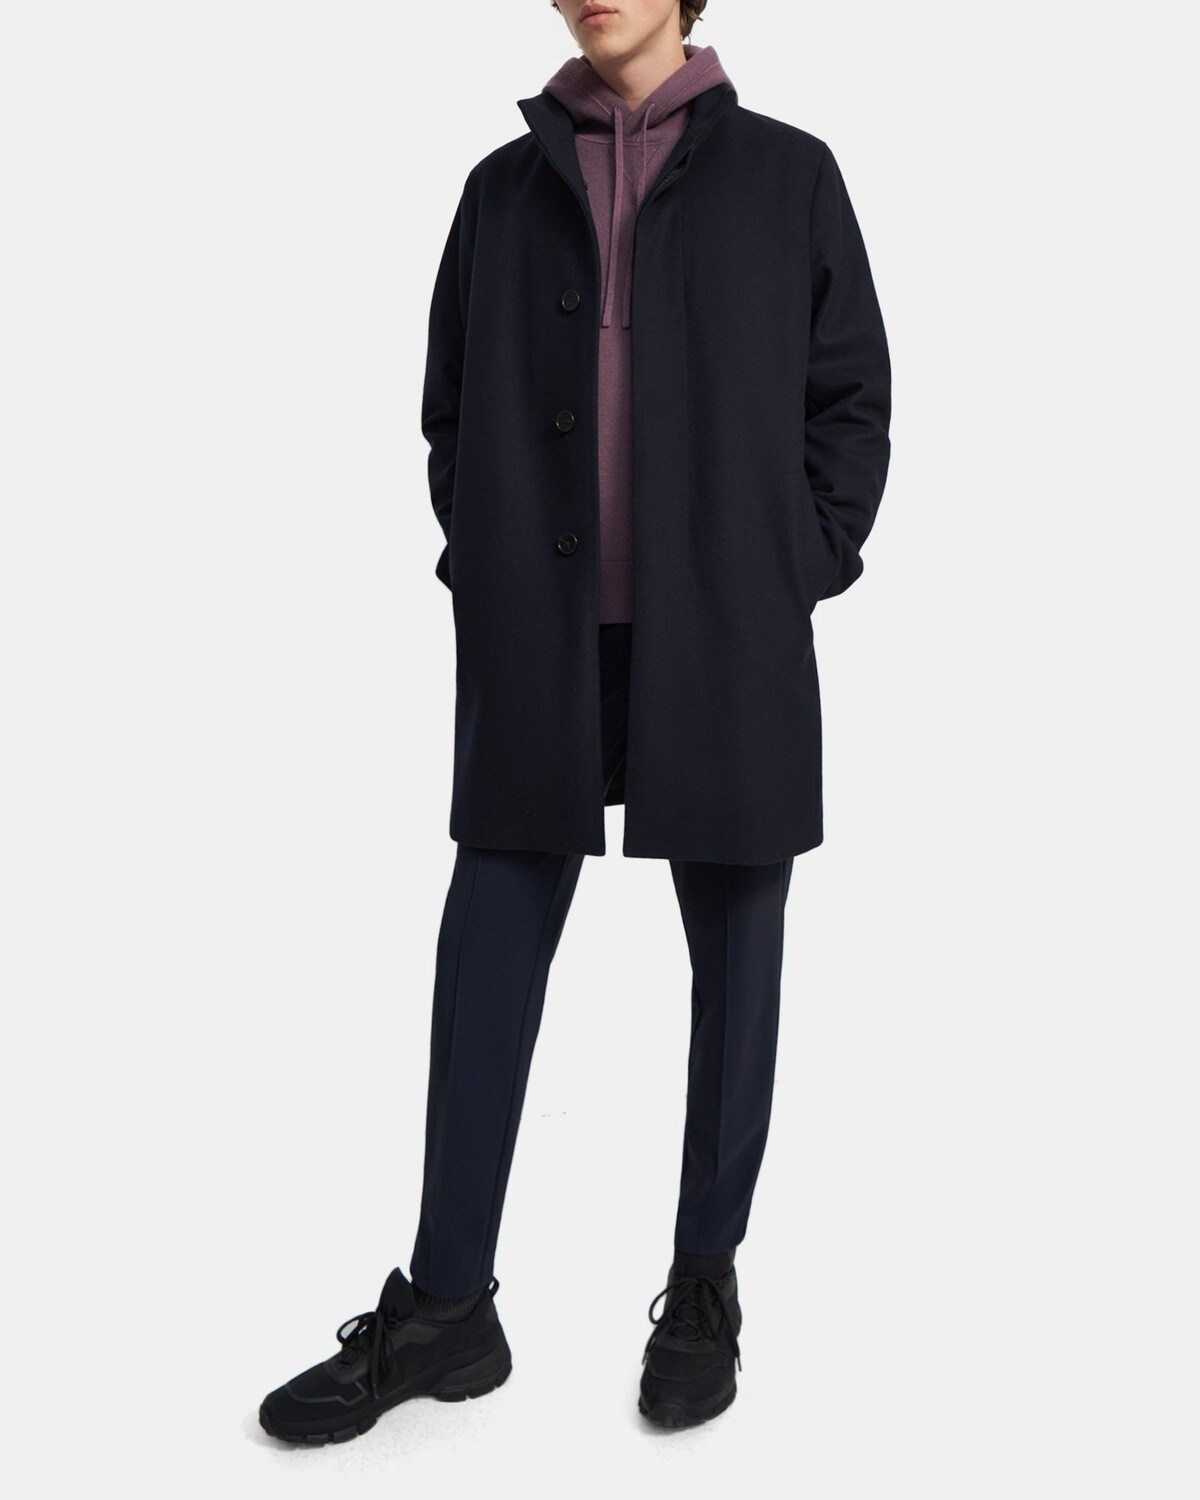 띠어리 맨 코트 Theory Stand-Collar Coat in Melton Wool,ECLIPSE